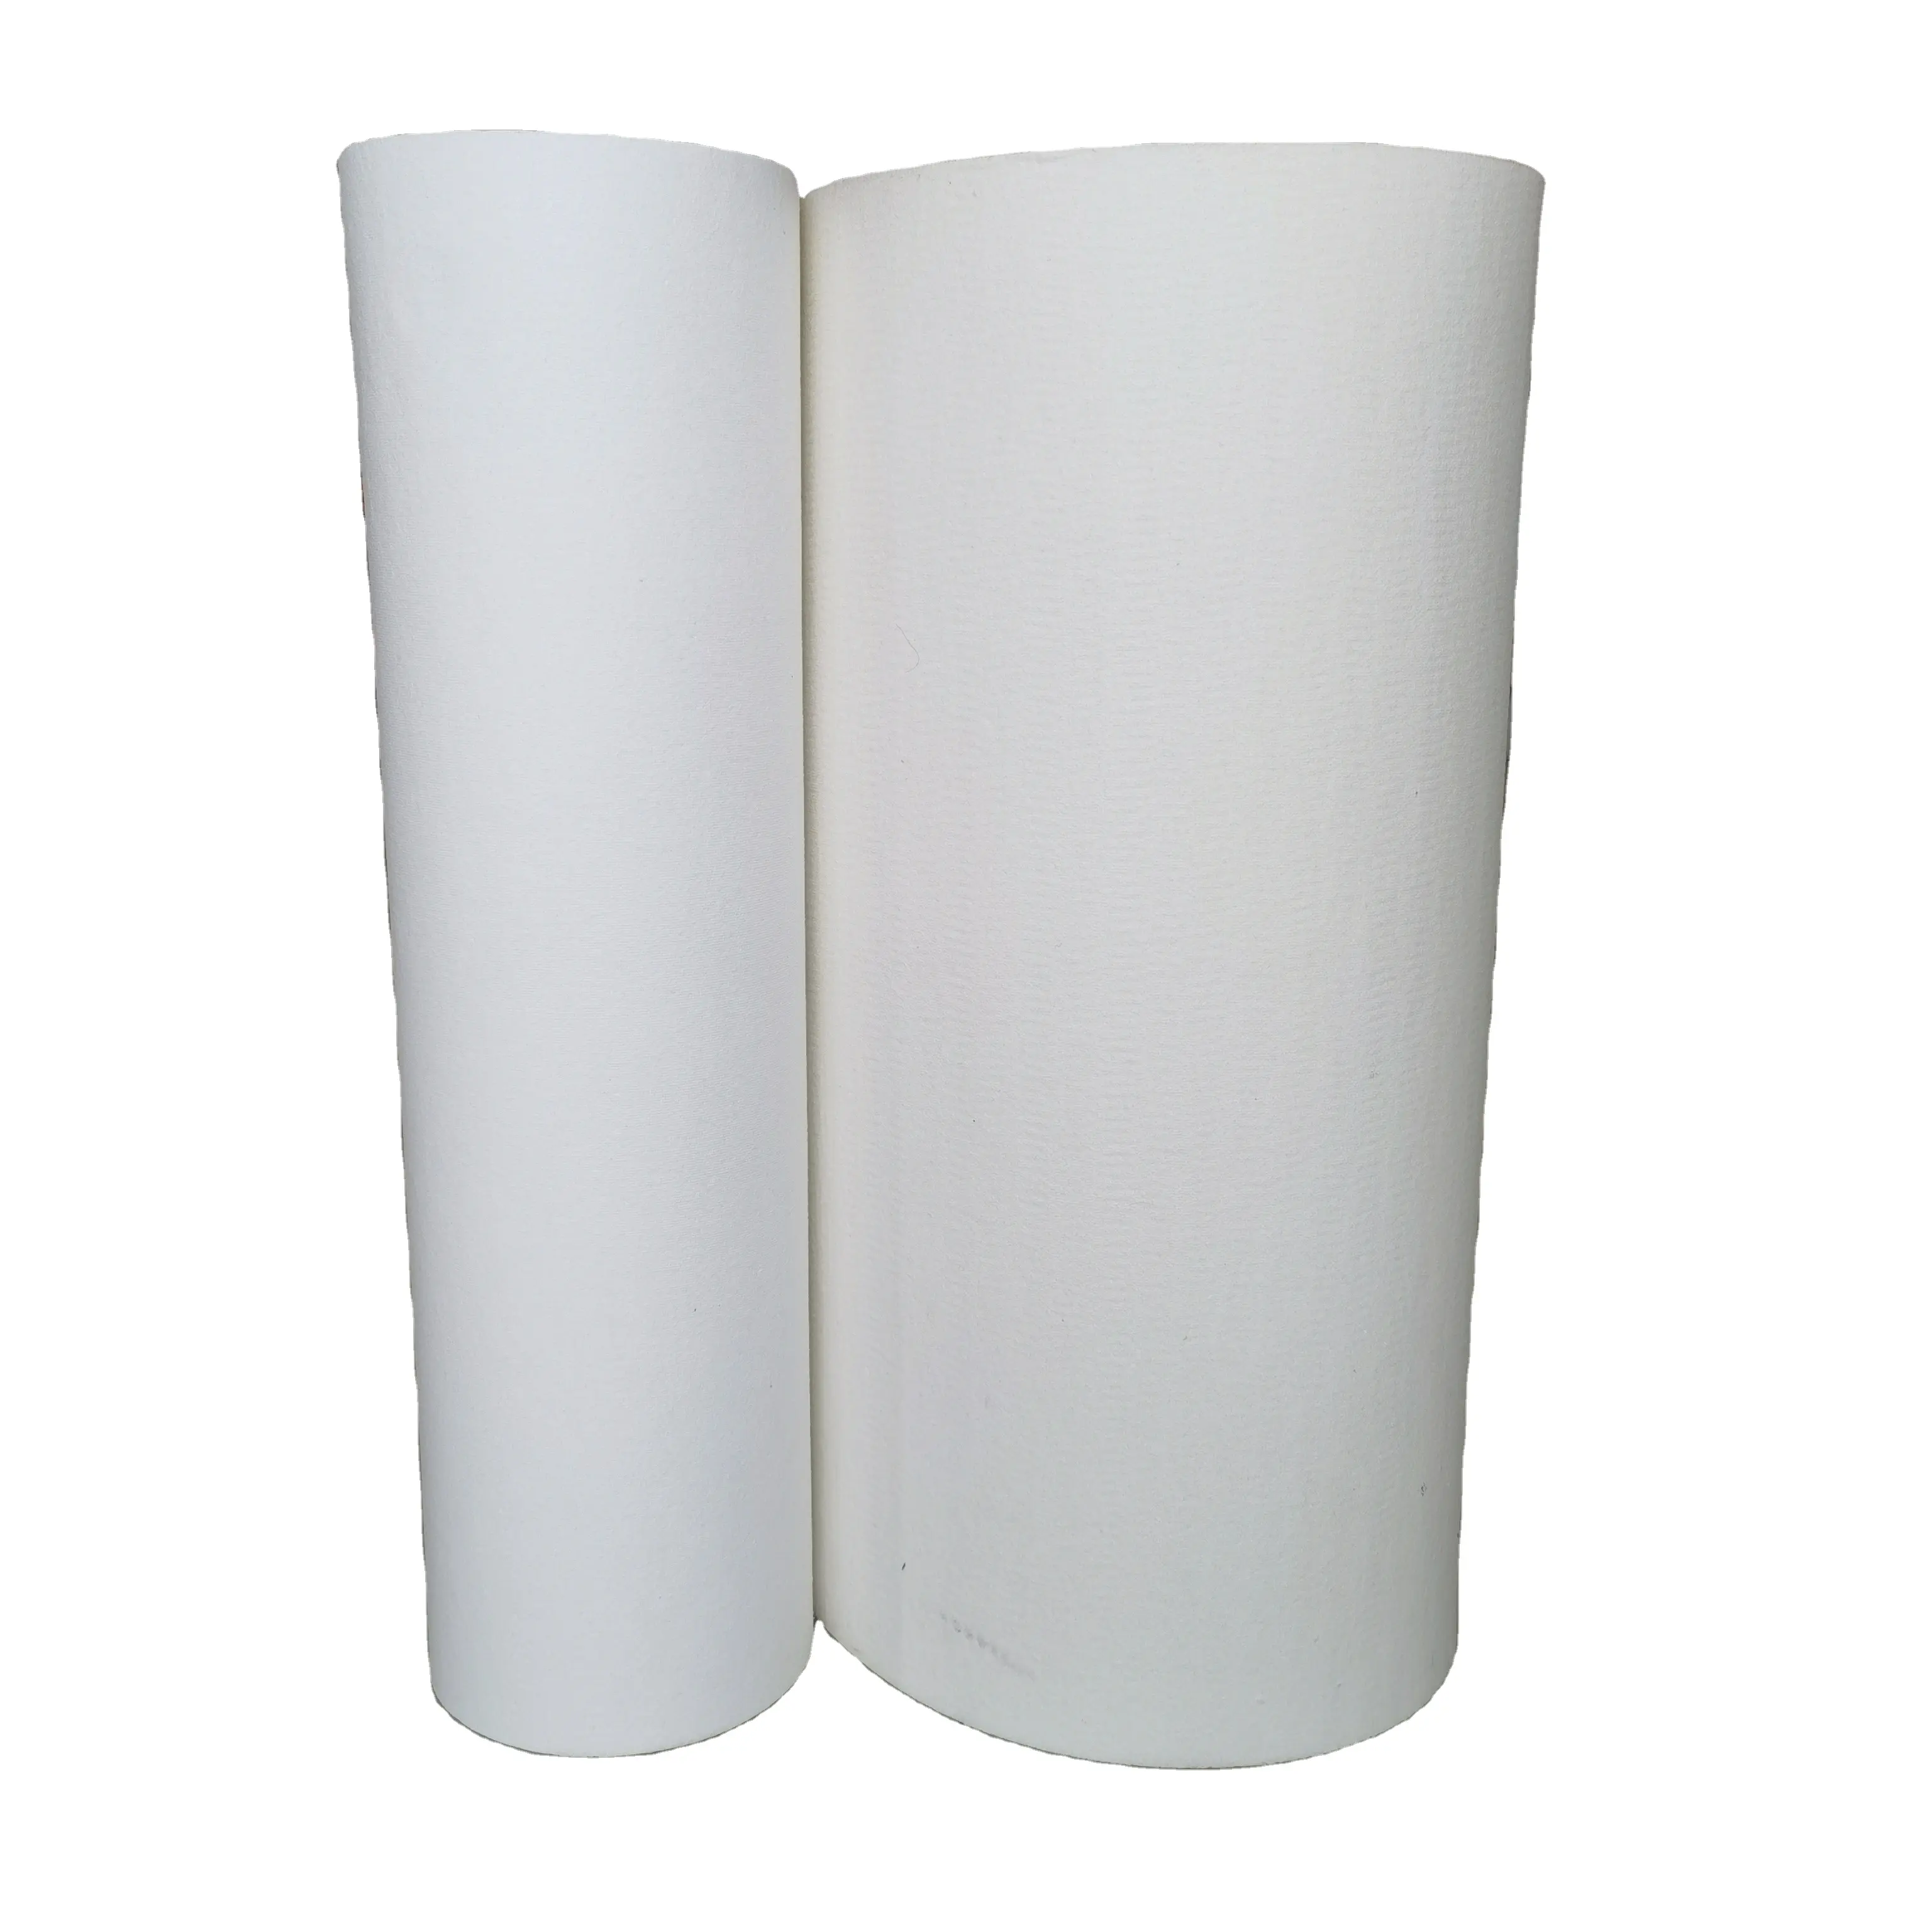 Kertas serat keramik termal insulasi tahan panas Alumina tinggi Kiln kaca aman